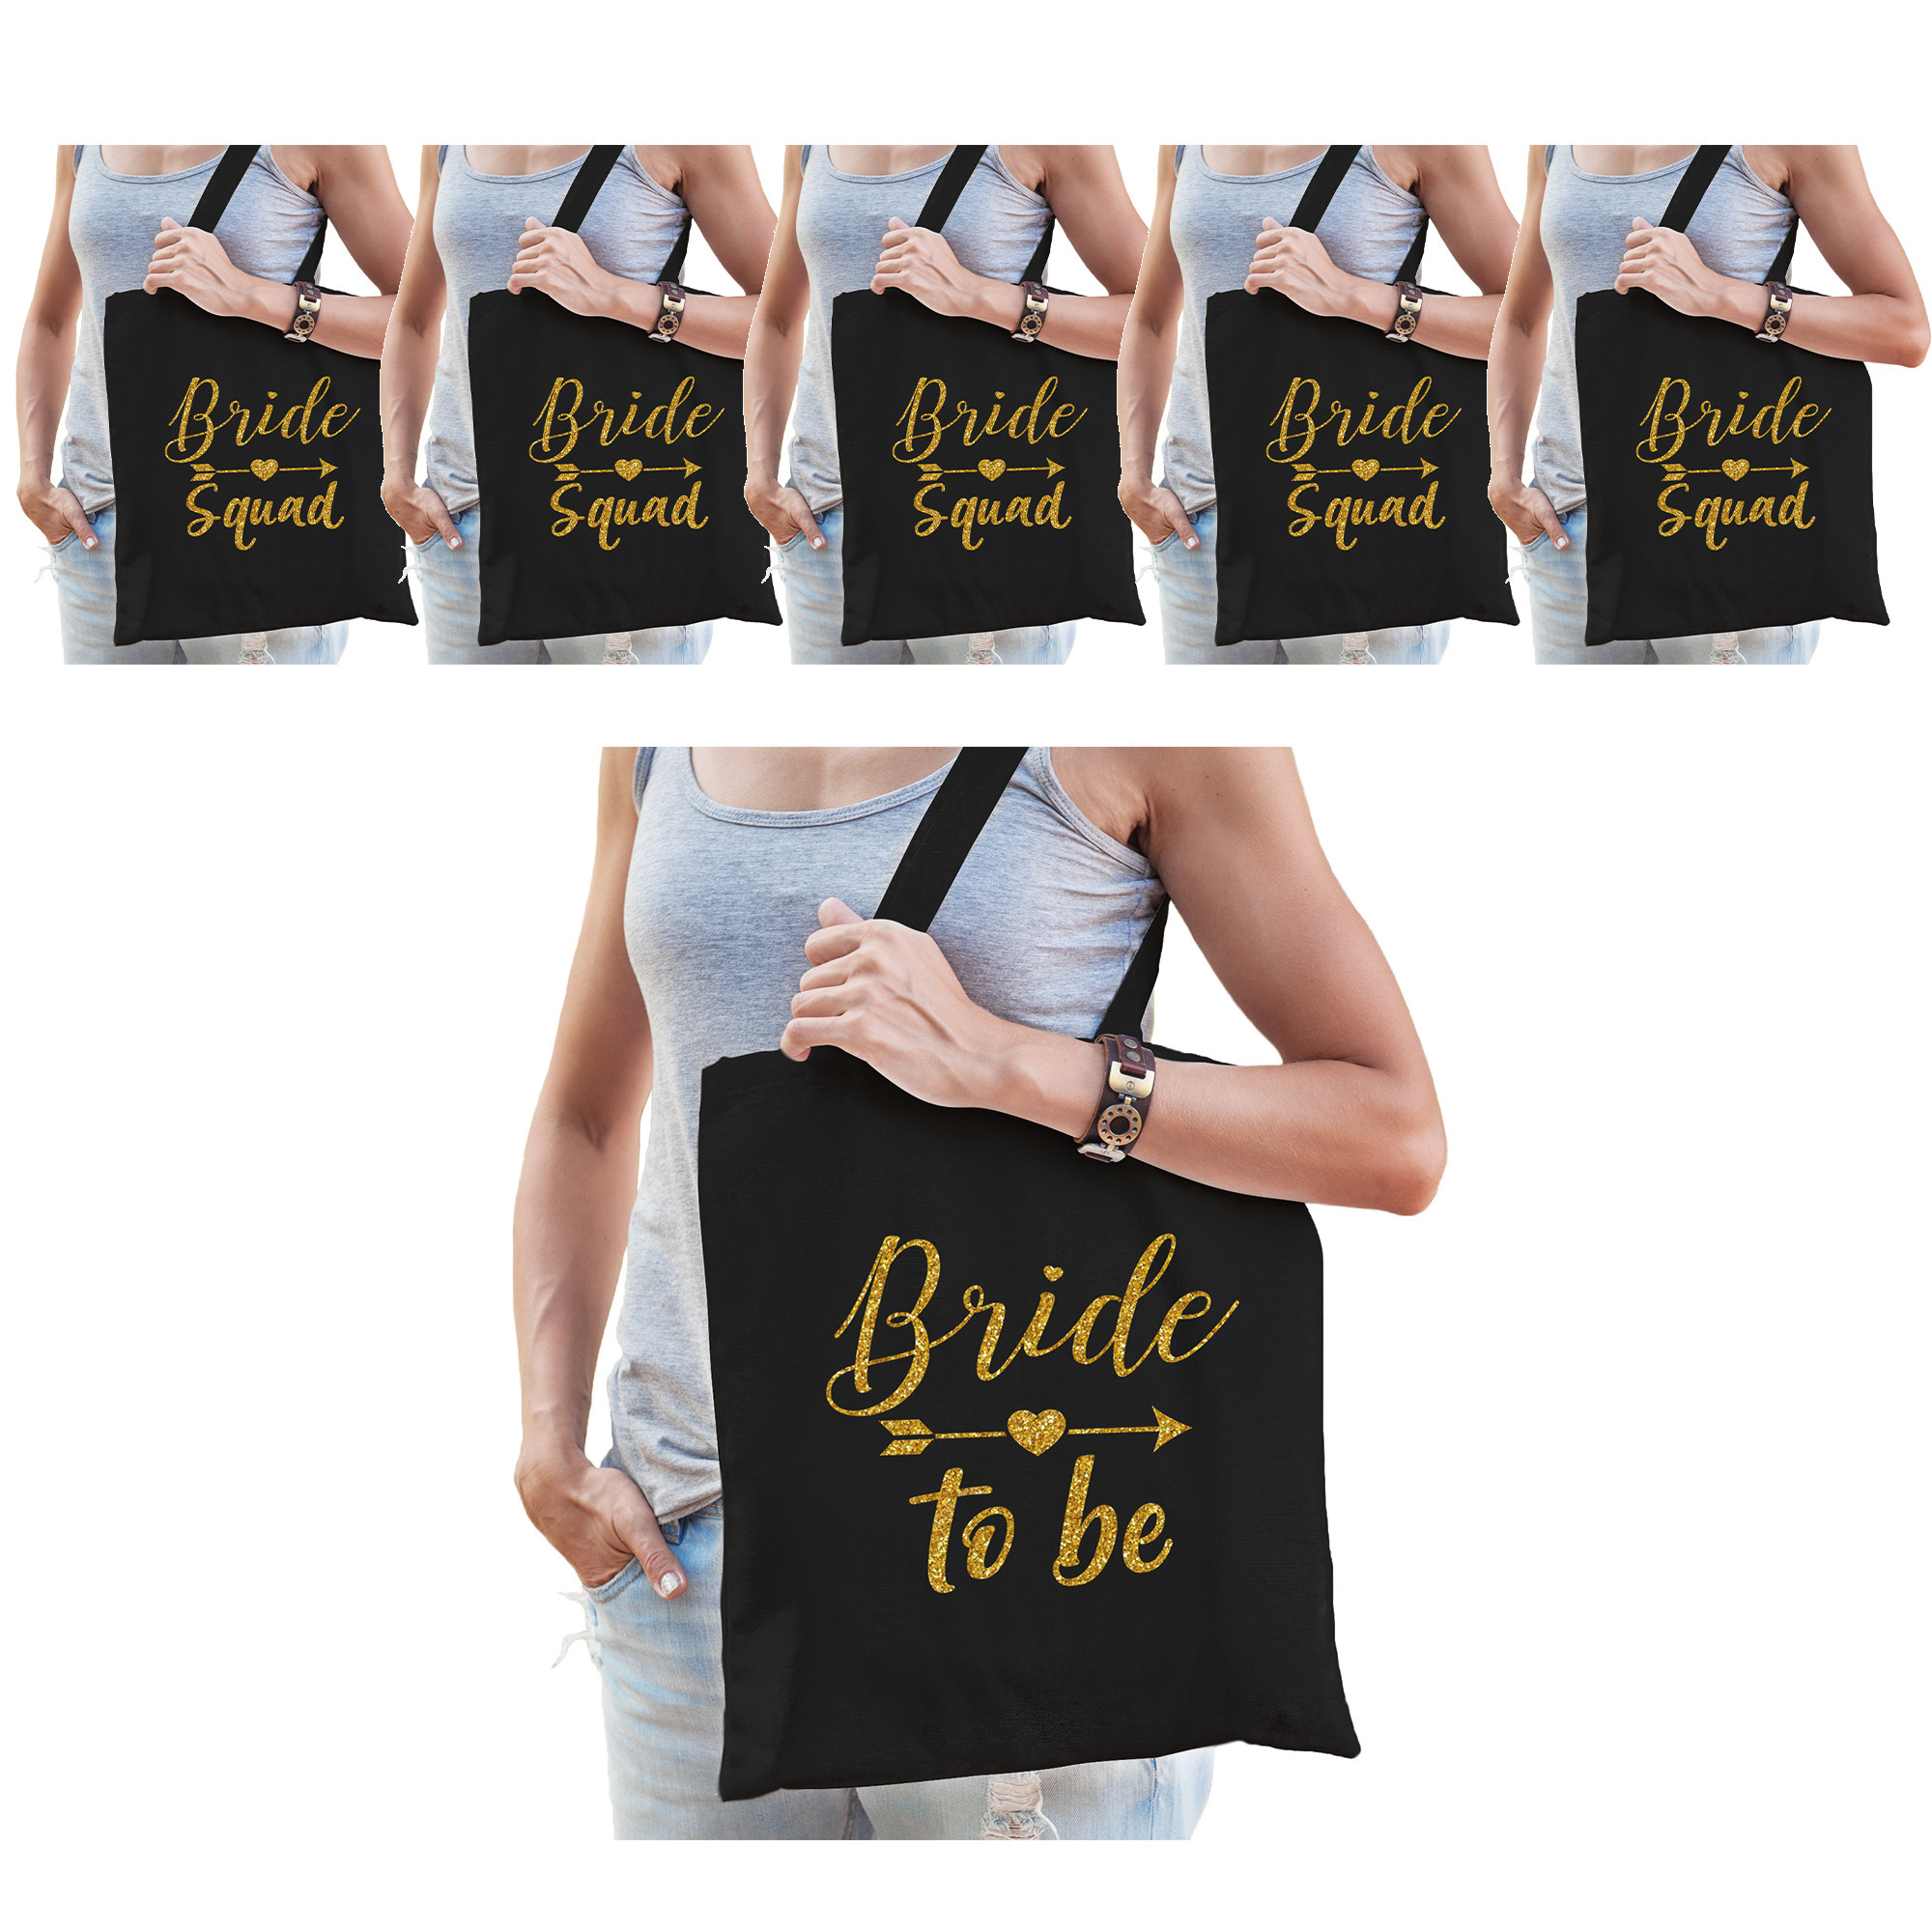 Vrijgezellenfeest dames tasjes- goodiebag pakket: 1x Bride to Be zwart goud+ 7x Bride Squad zwart go